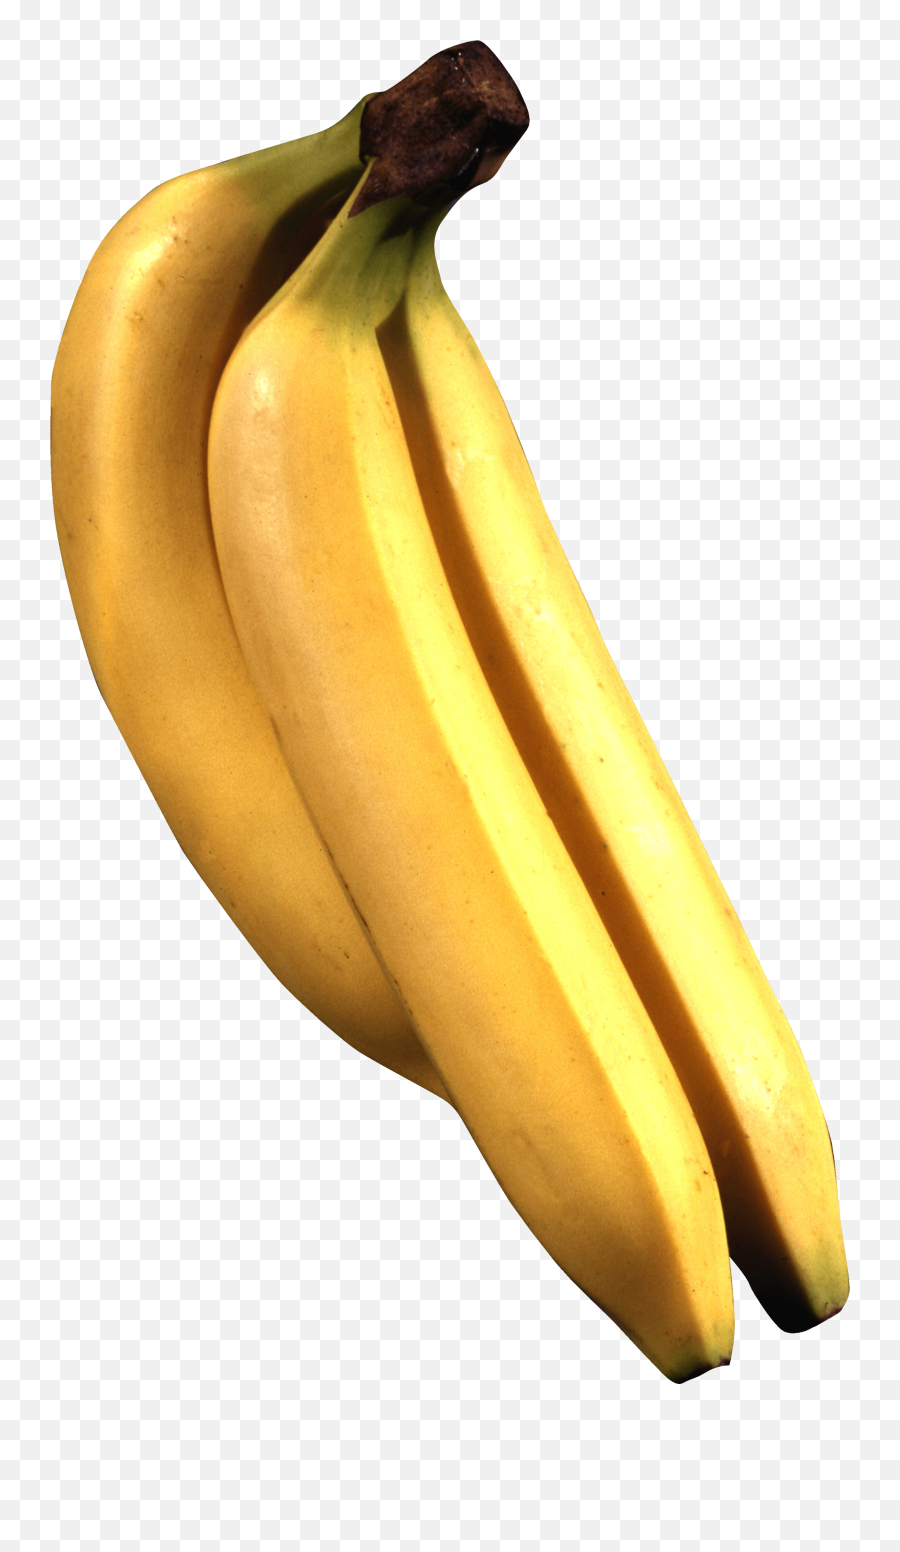 Download Free Png Banana - Backgroundbananaspicture Banana Image Download,Banana Transparent